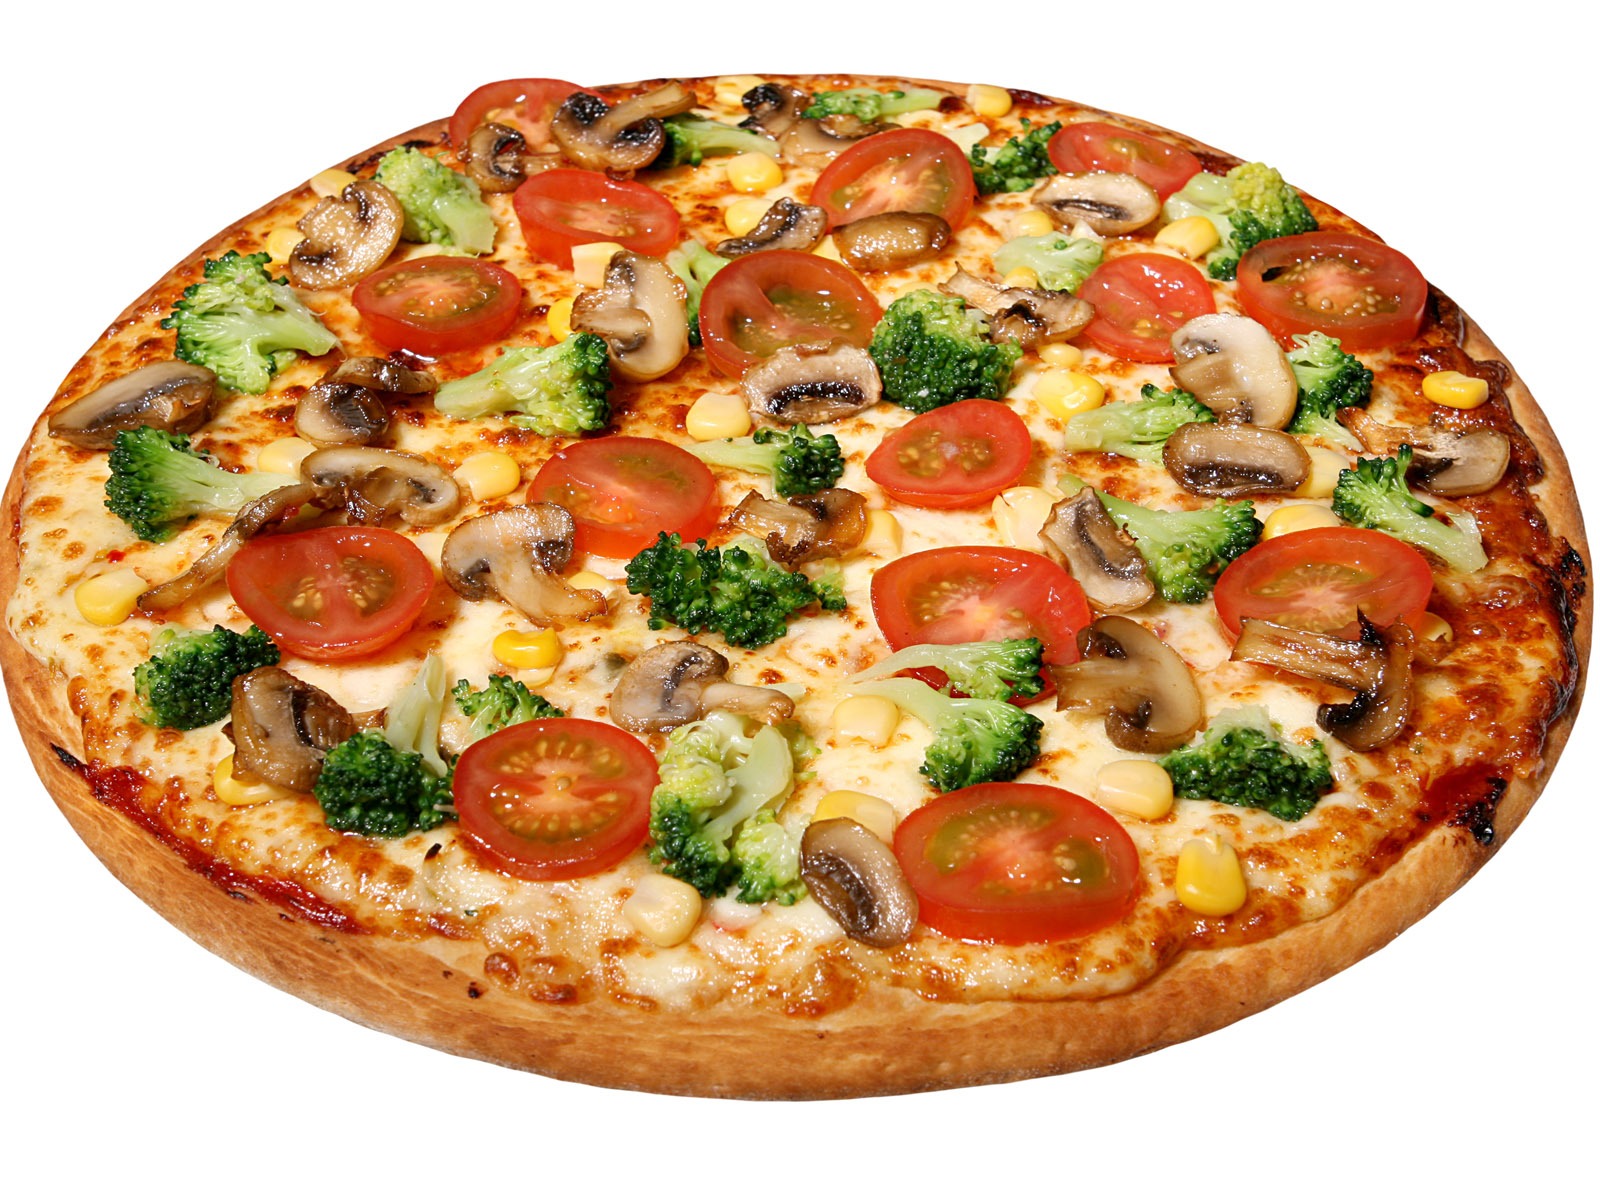 Fondos de pizzerías de Alimentos (4) #18 - 1600x1200